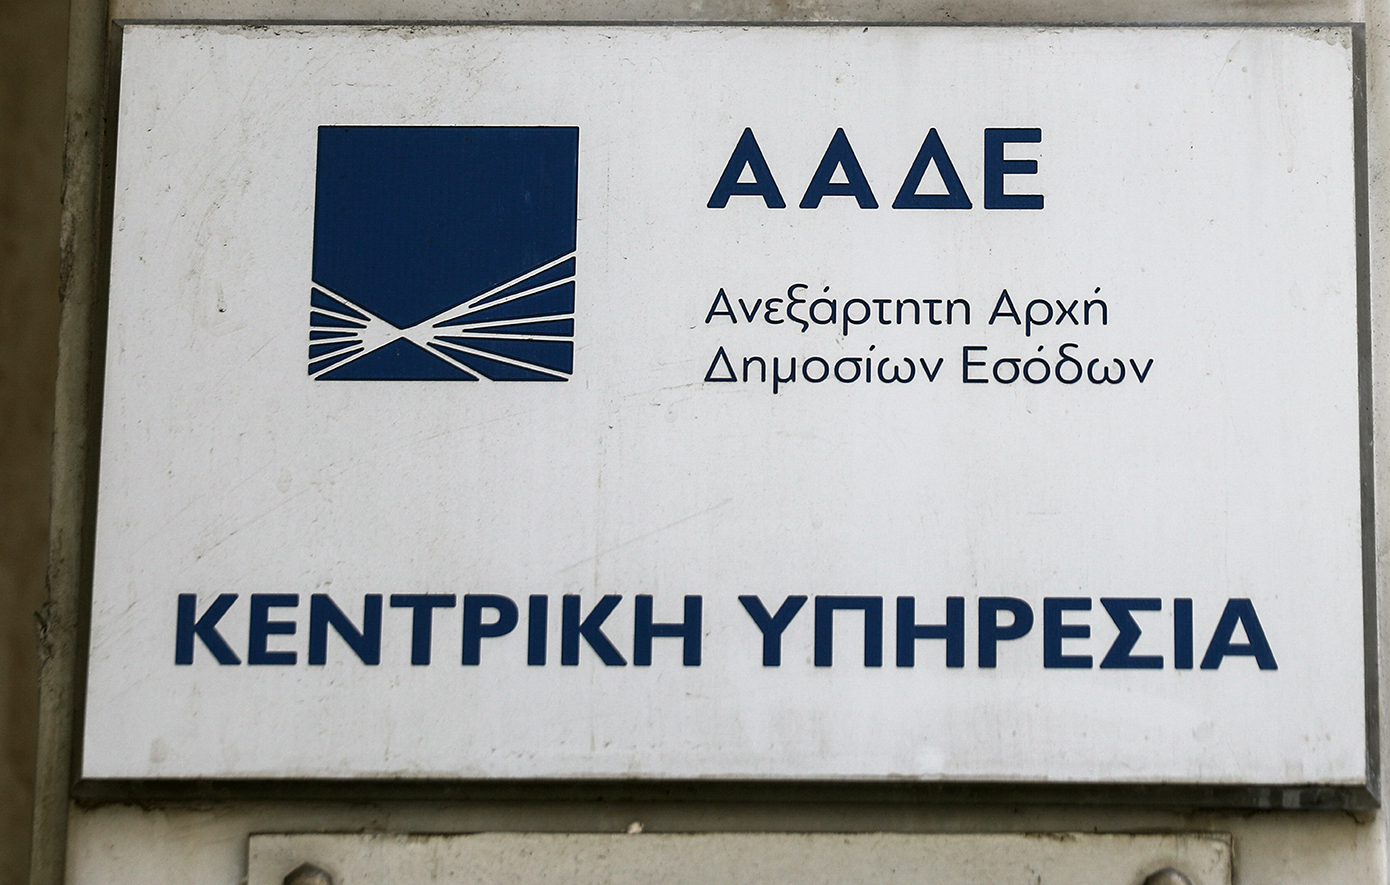 ΑΔΑΕ: Αποφάσισε πλήρη συμμόρφωση με την απόφαση του ΣτΕ για την παρακολούθηση Ανδρουλάκη